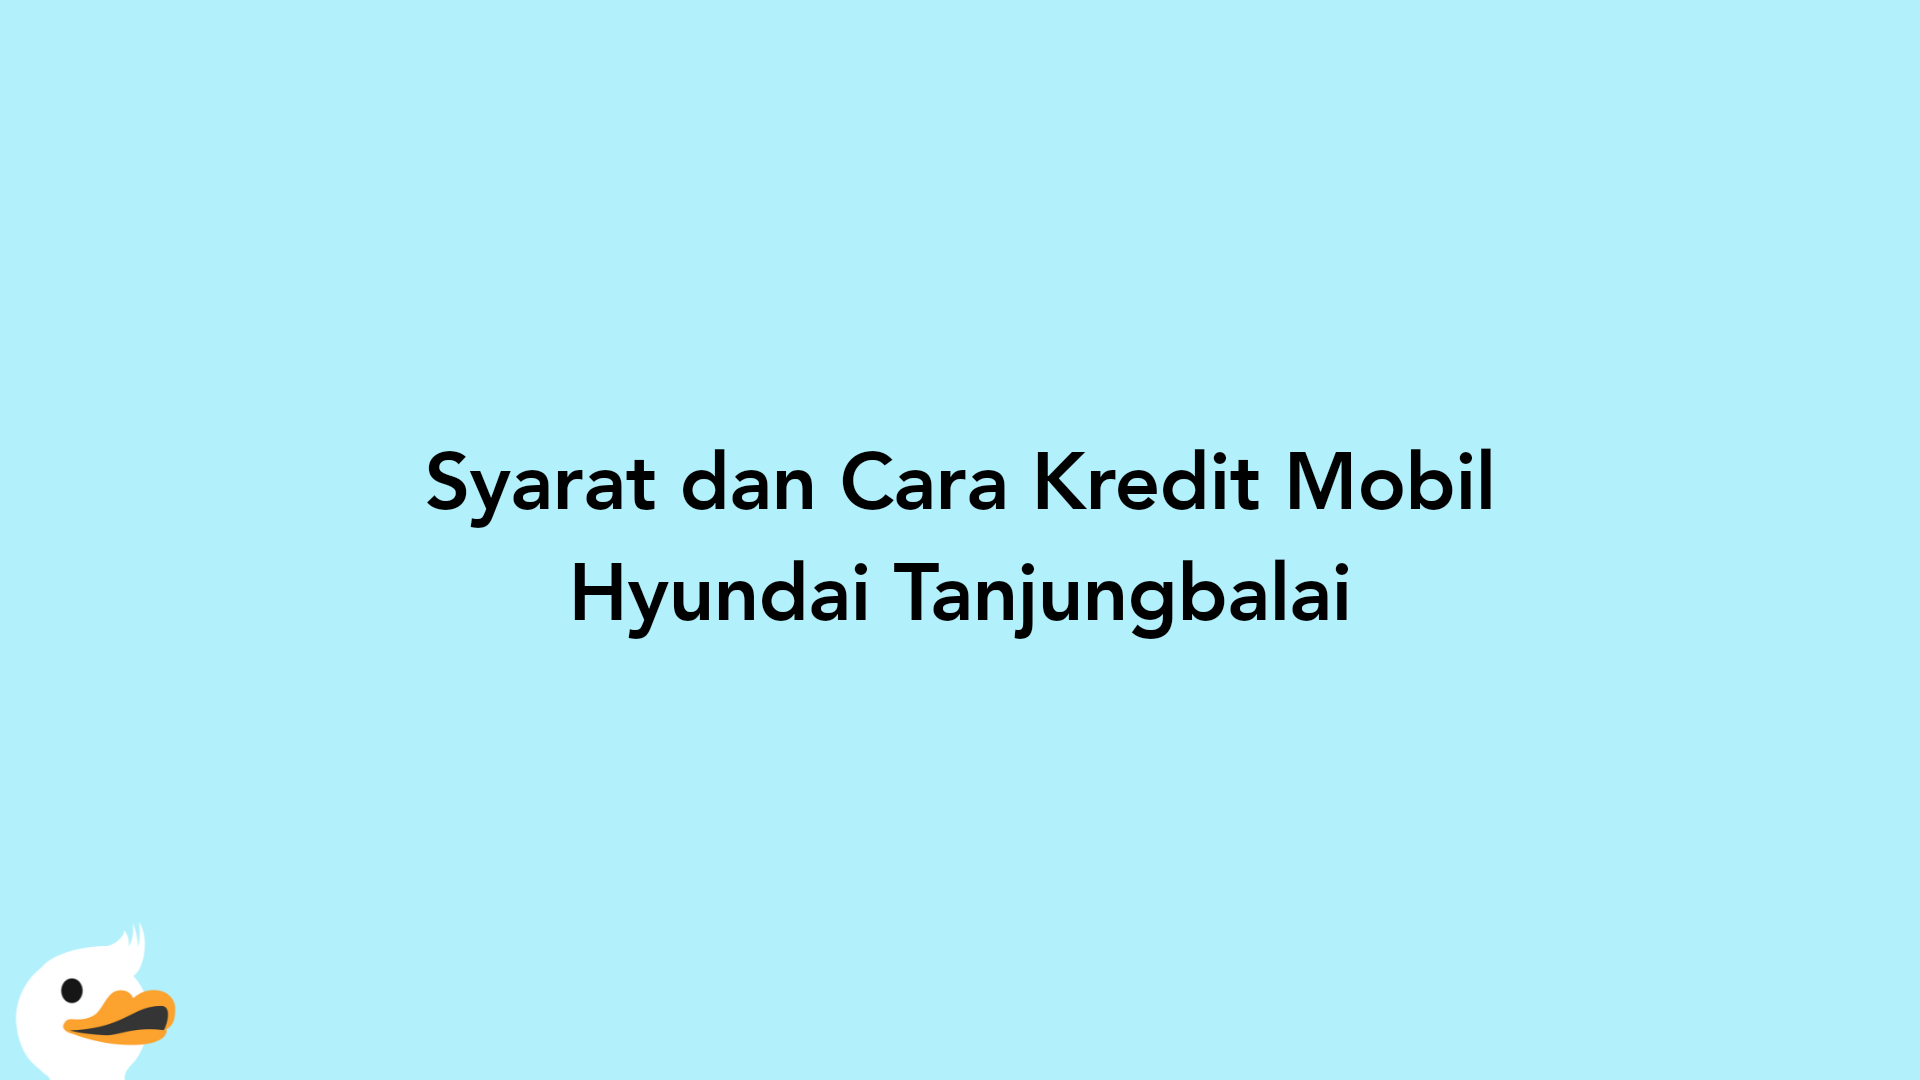 Syarat dan Cara Kredit Mobil Hyundai Tanjungbalai